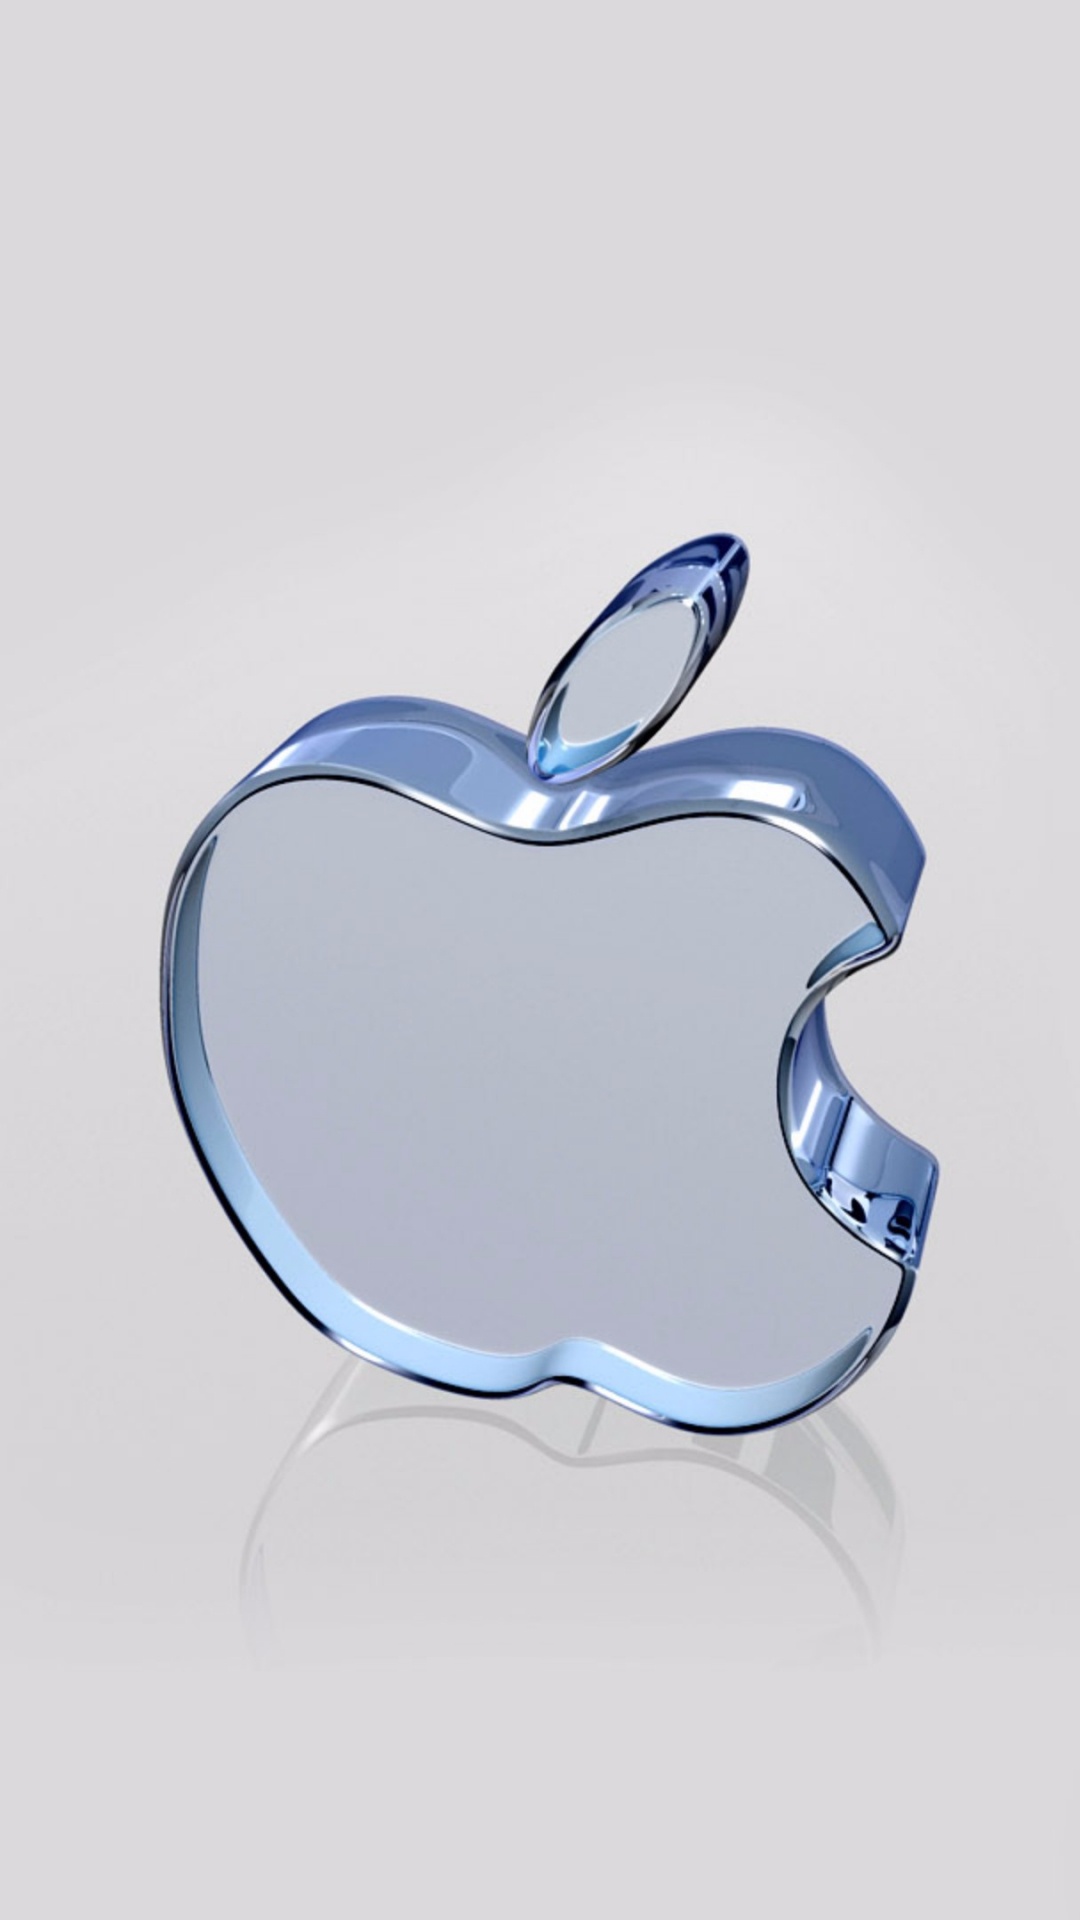 Apple, Firmenzeichen, Äpfeln, Blau, Herzen. Wallpaper in 1080x1920 Resolution